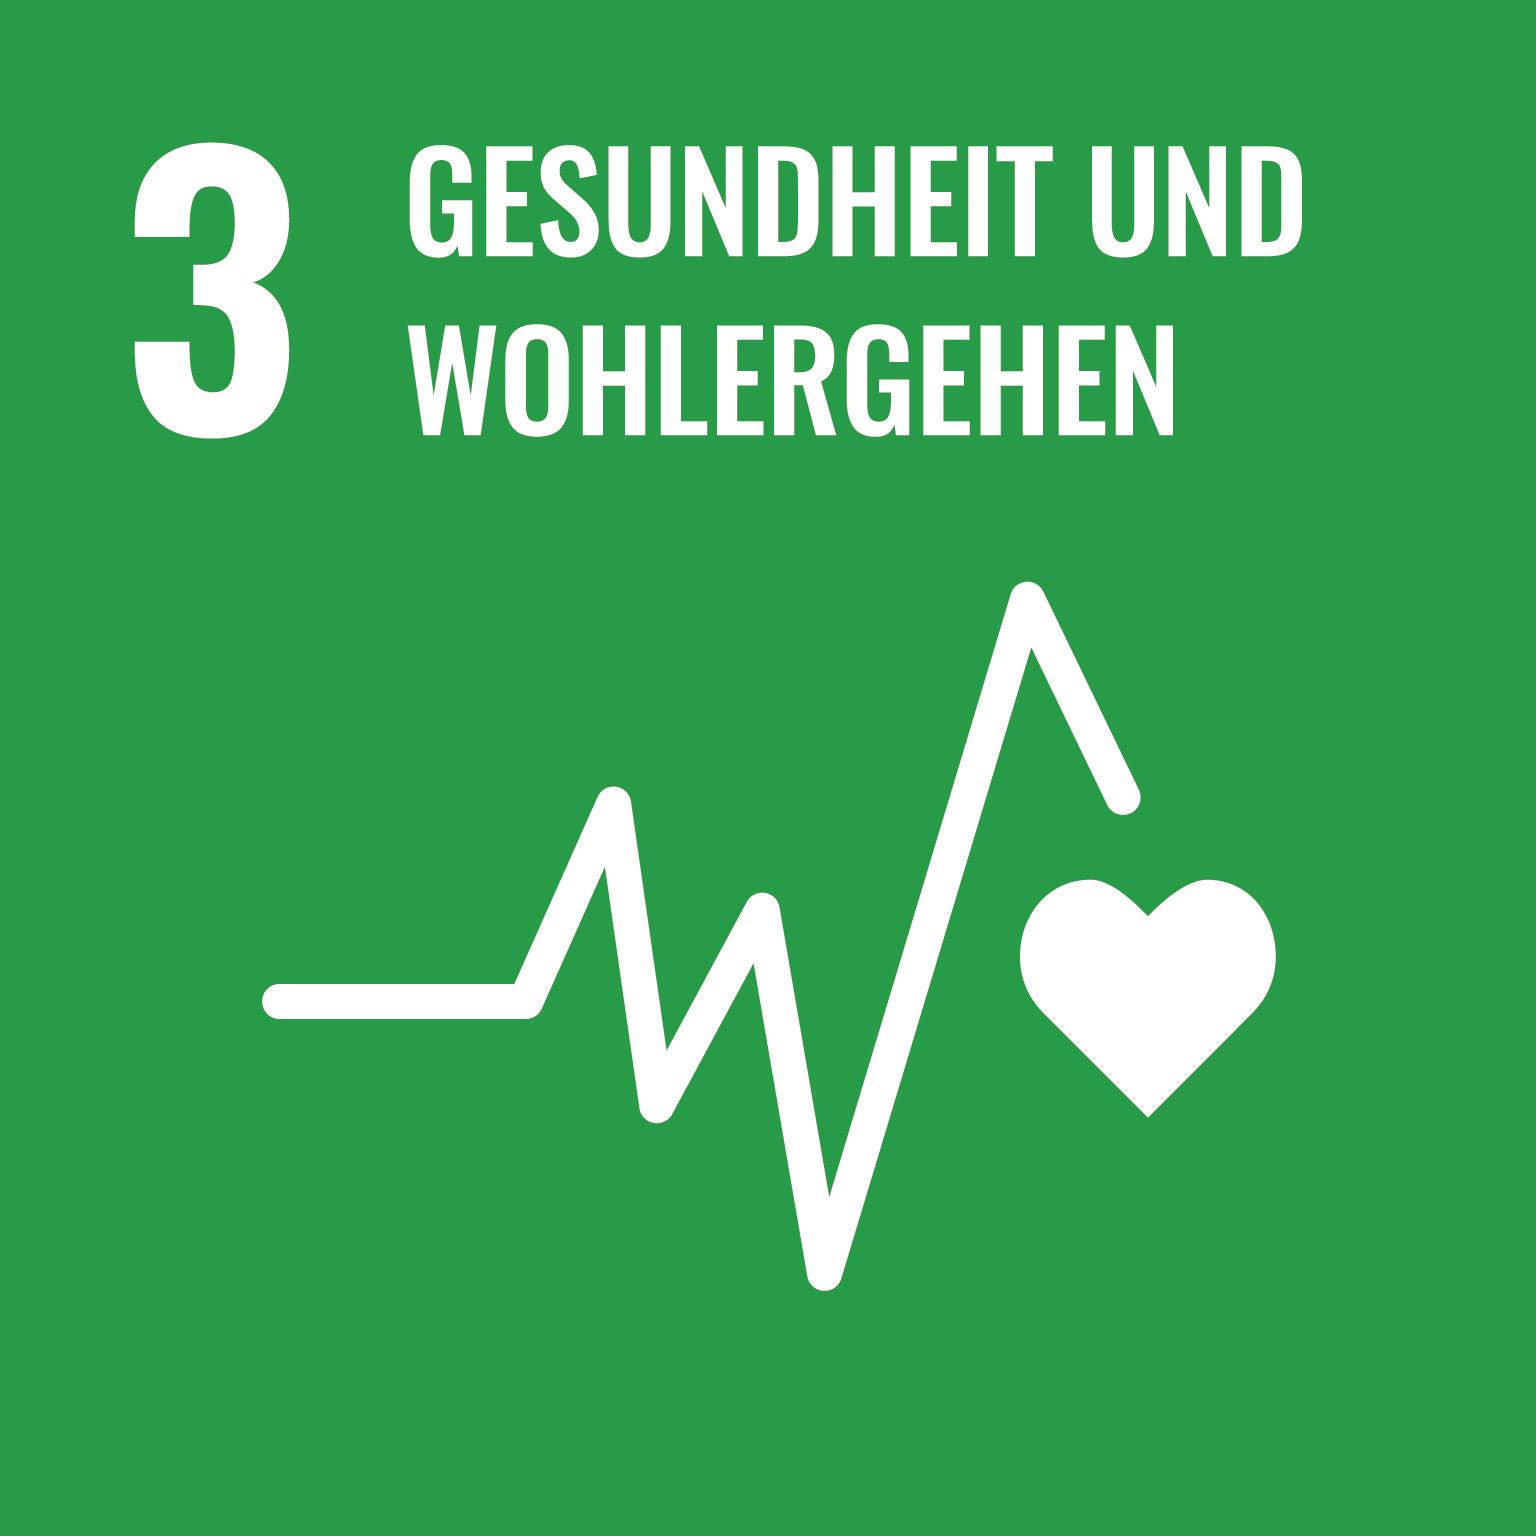 SDG_icons_DE-03_Gesundheit und Wohlergehen